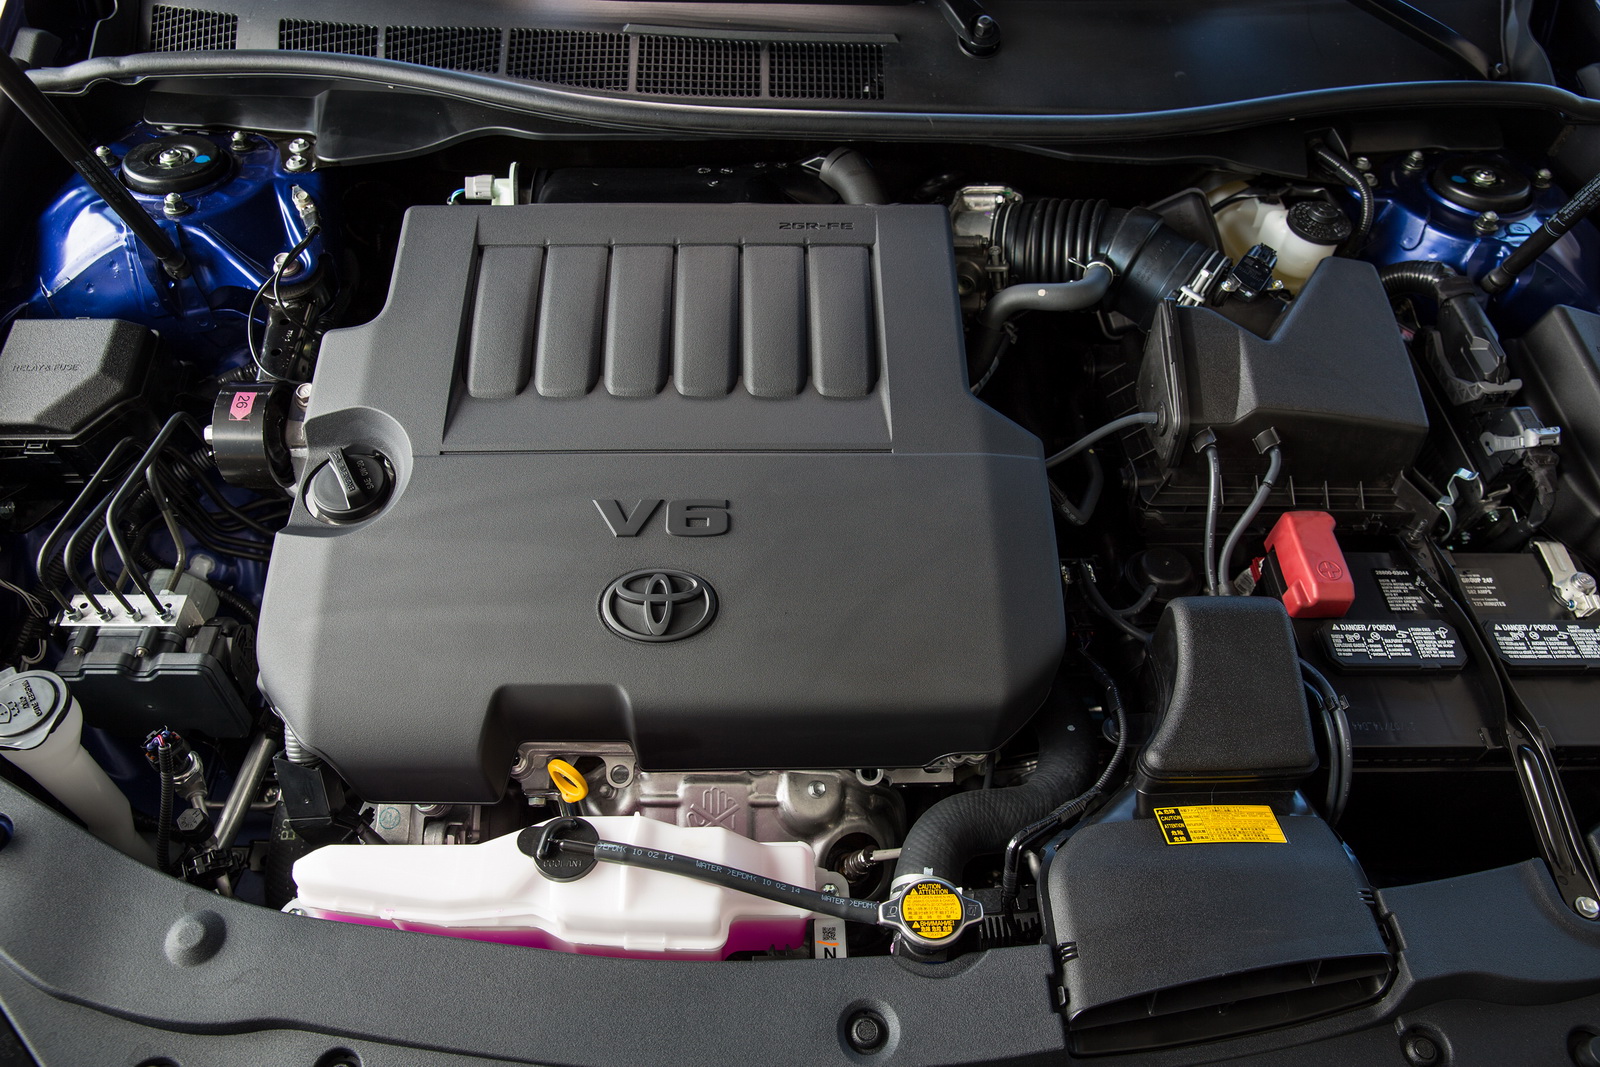 
Ở phiên bản mới, Toyota Camry tiếp tục sử dụng động cơ xăng 4 xy-lanh, dung tích 2,5 lít, sản sinh công suất tối đa 178 mã lực và mô-men xoắn cực đại 230 Nm. Thứ hai là động cơ V6, dung tích 3,5 lít với công suất tối đa 268 mã lực và mô-men xoắn cực đại 336 Nm. Sức mạnh được truyền tới bánh thông qua hộp số tự động 6 cấp.
